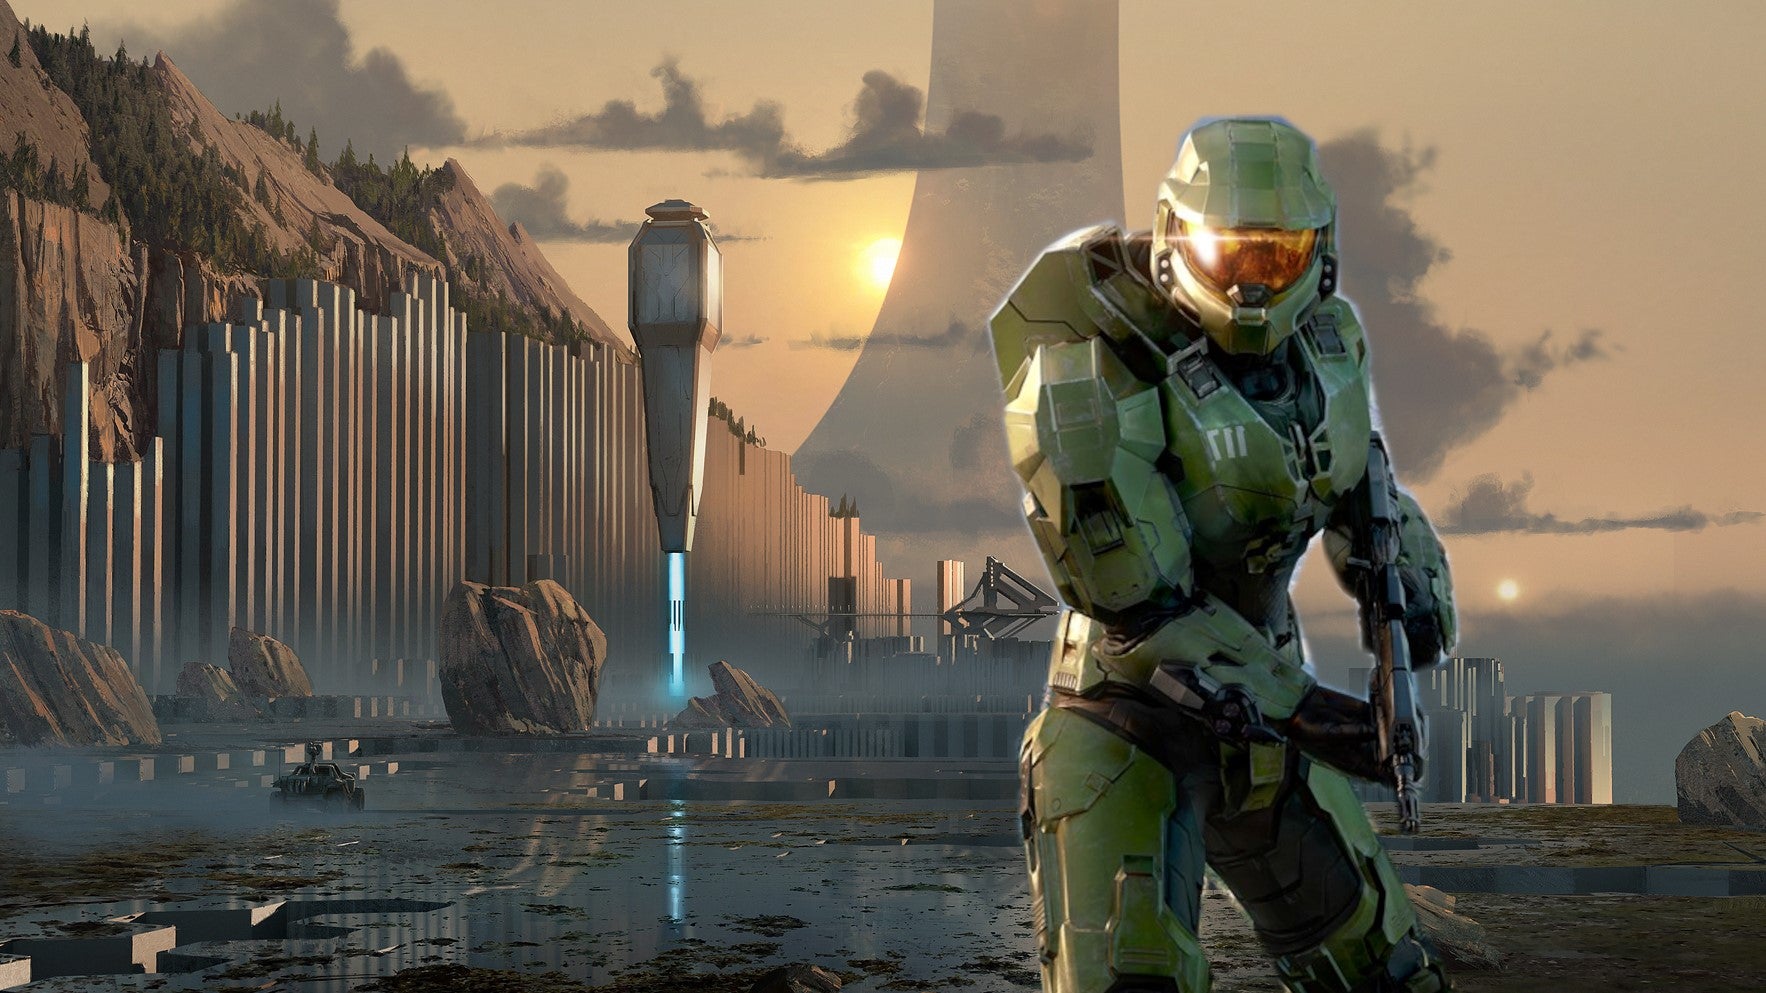 Bilder zu Halo Infinite frisst Datenvolumen: Berichte sprechen von bis zu 1 GB pro Spiel